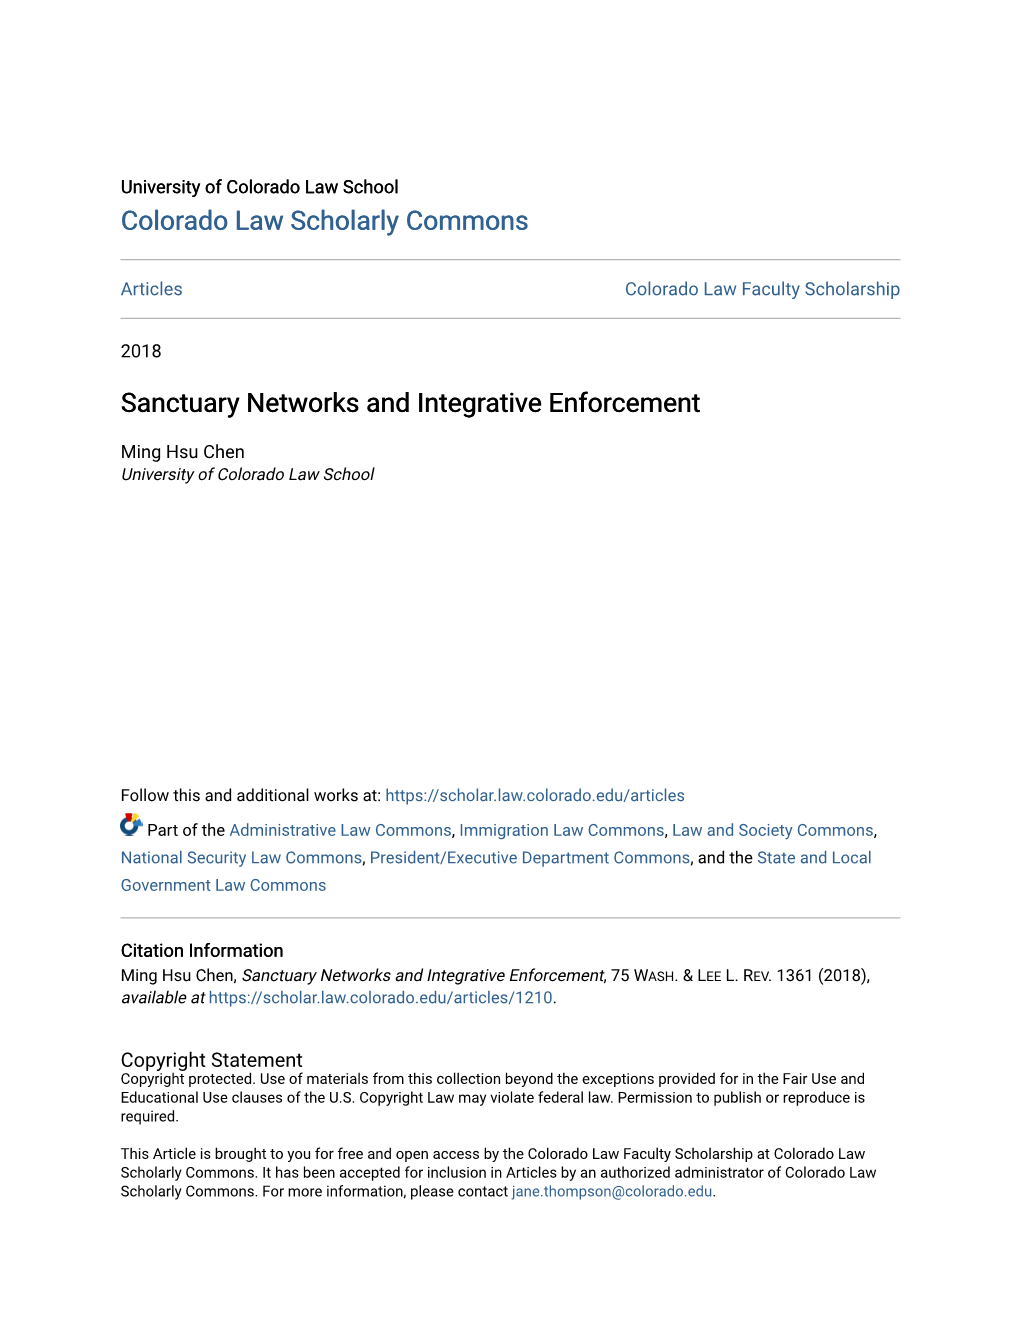 Sanctuary Networks and Integrative Enforcement